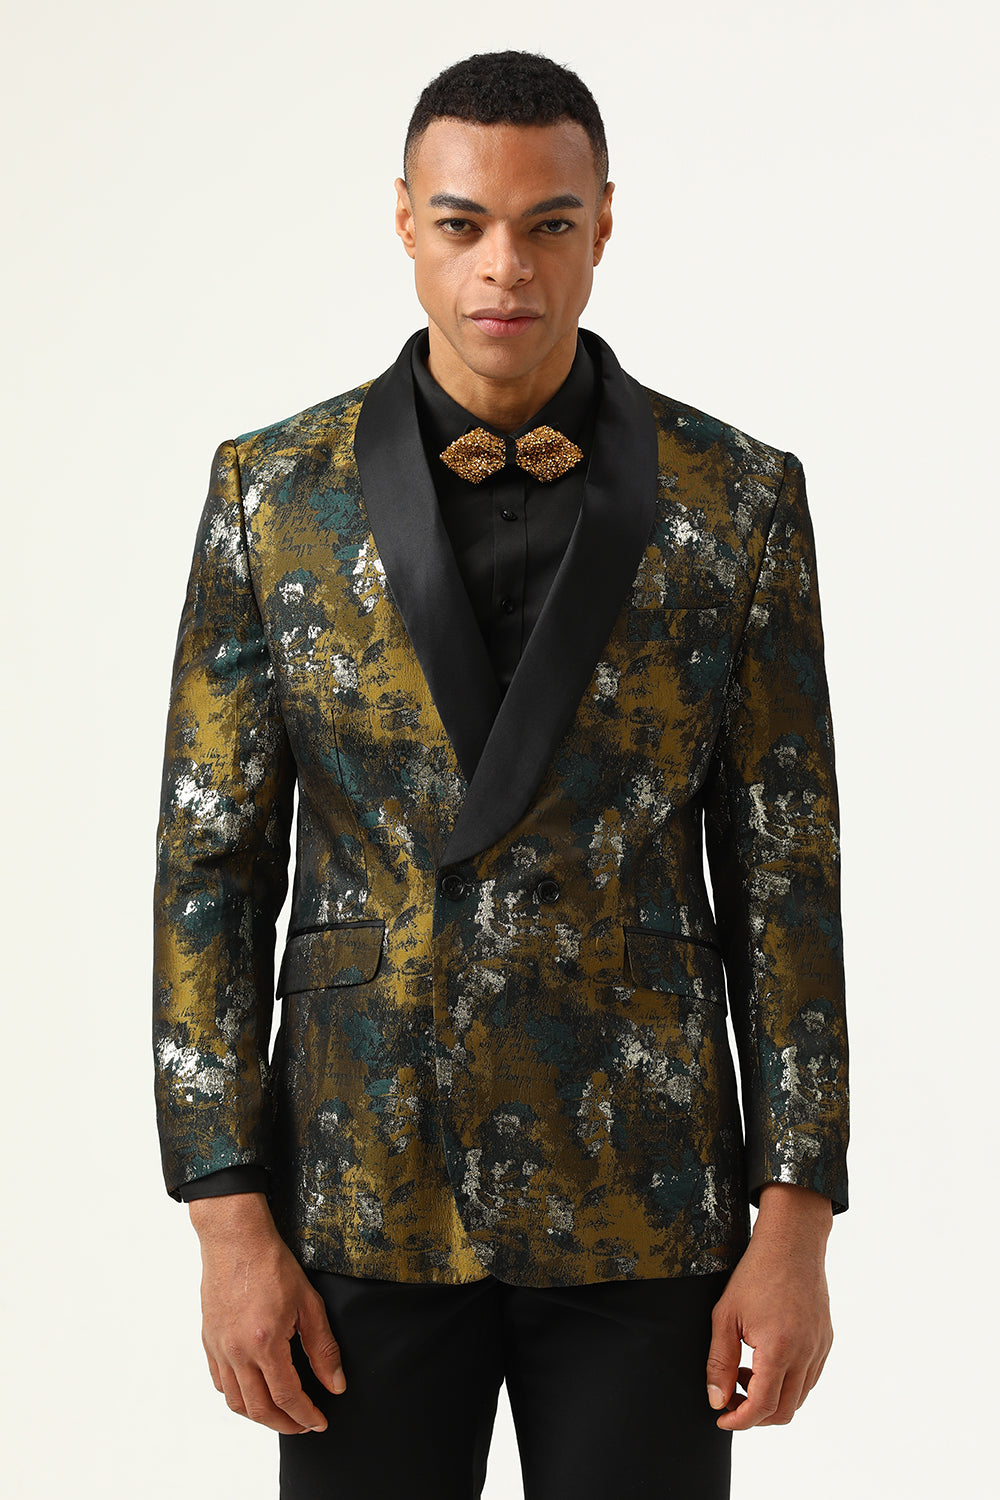 Men's Blazers & Jackets for Wedding & Parties